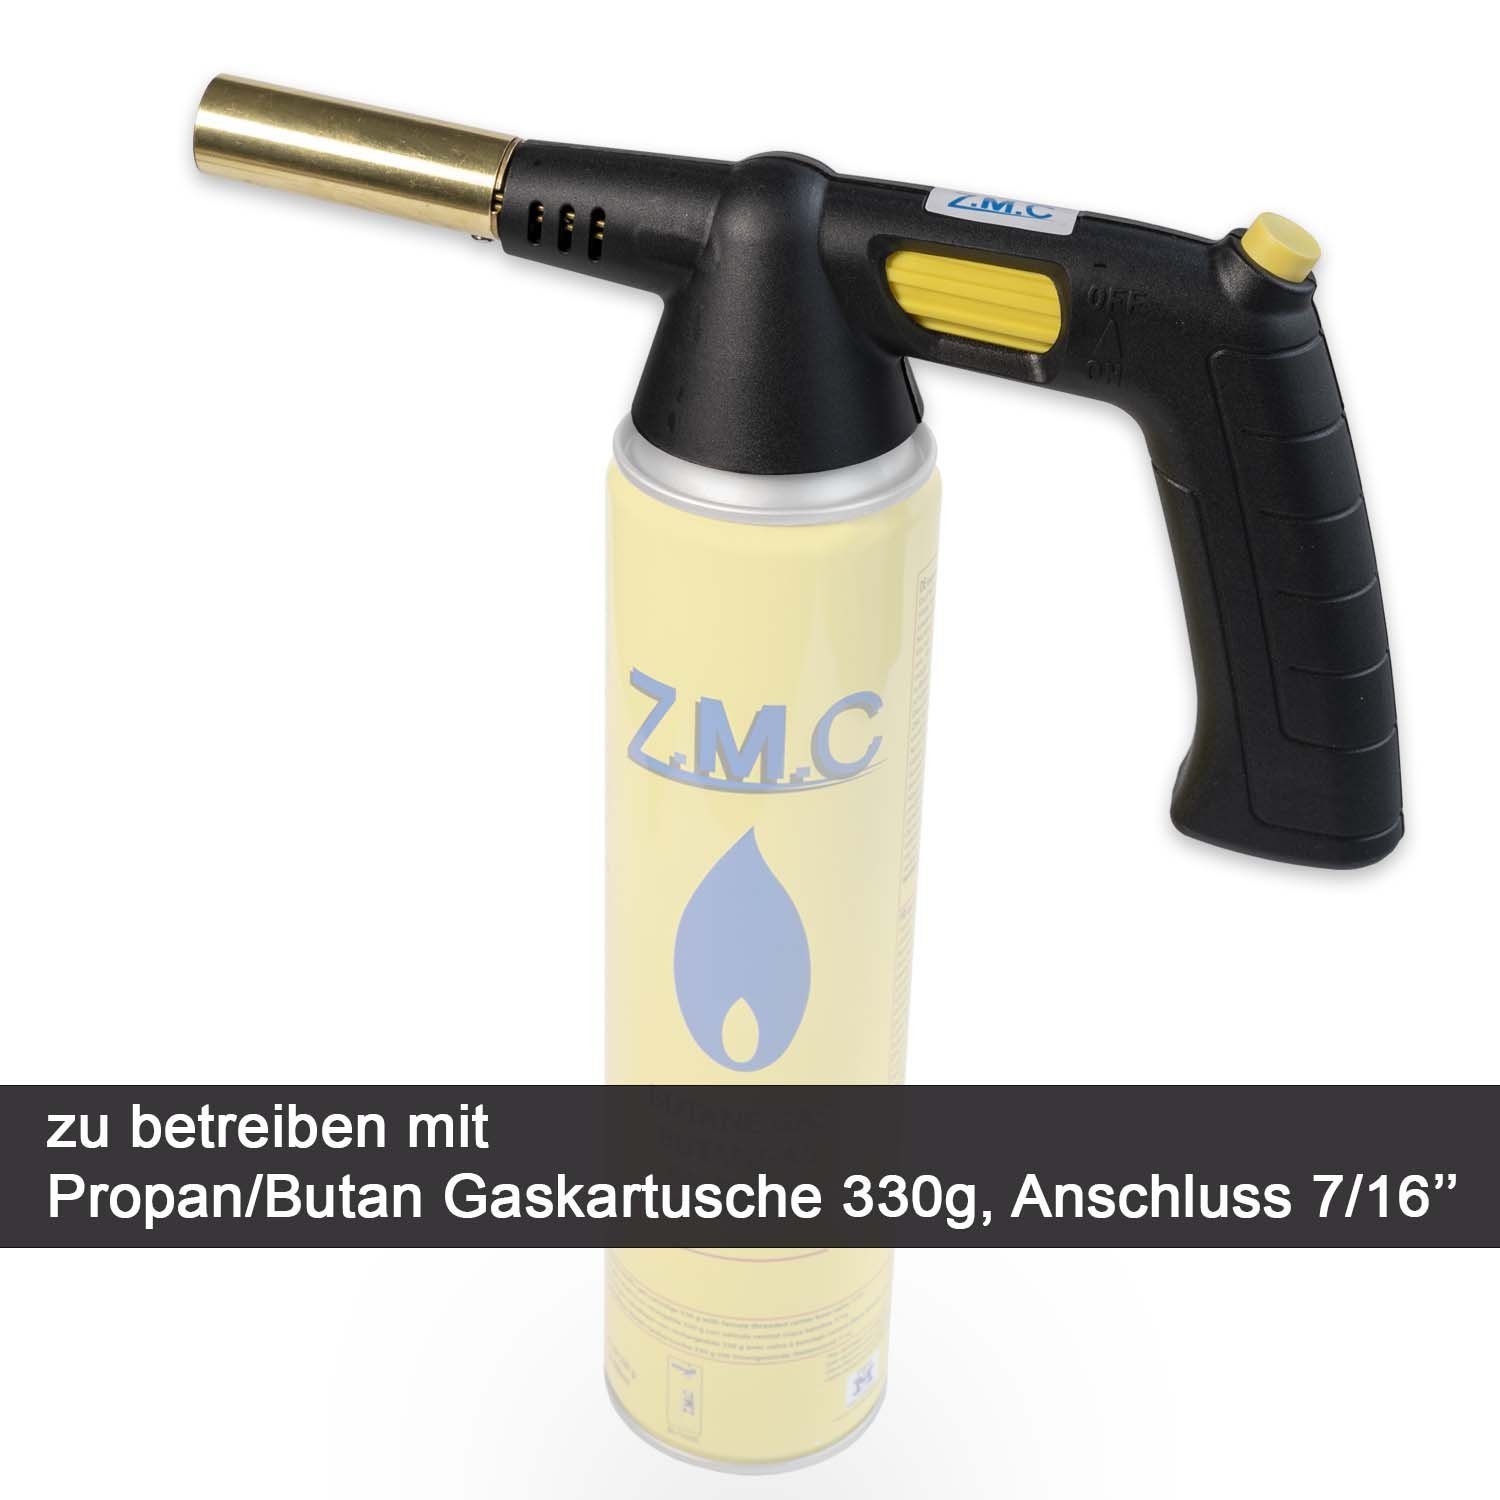 ZMC Flambierbrenner Gasbrenner Gaskartuschen (automatische Bunsenbrenner 2x Kohleanzünder Lötlampe Lötbrenner Flammenleistung Piezo-Zündung einstellbare 330g, + Lötpistole), Grillanzünder Gasbrenneraufsatz / Flammspritzpistole